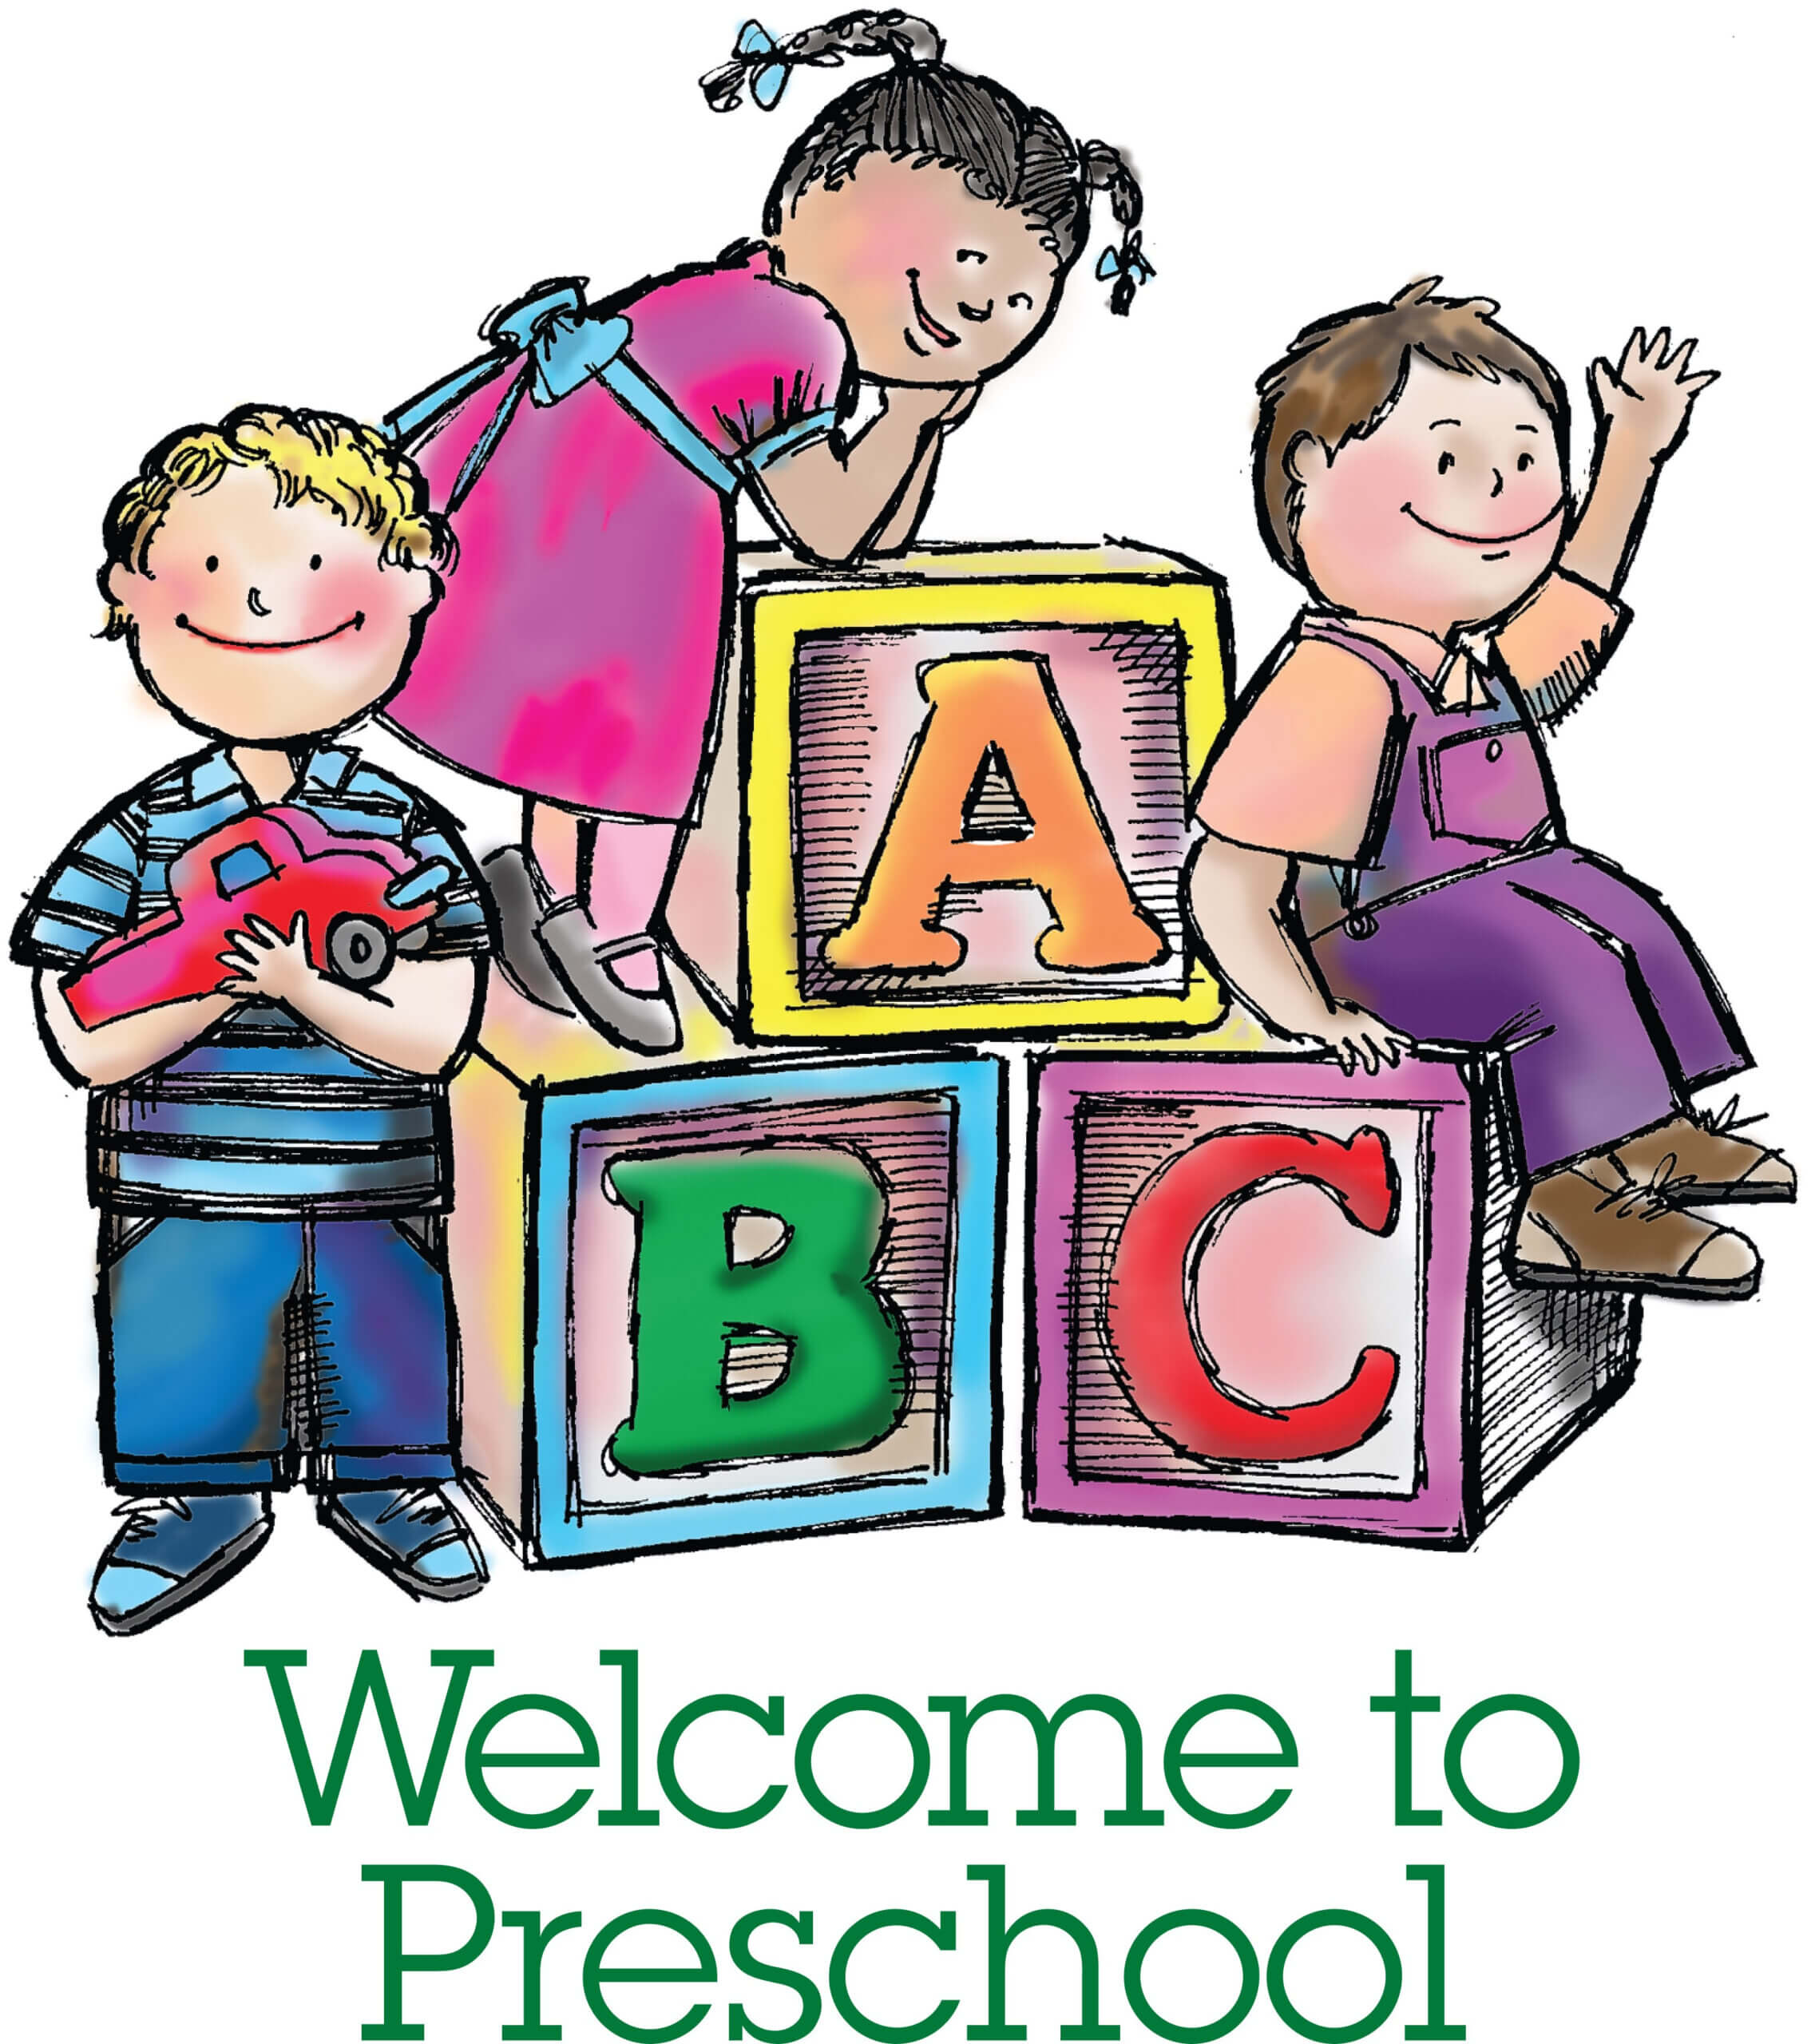 Play School Brochure Templates Unique Free Nursery School For Play School Brochure Templates